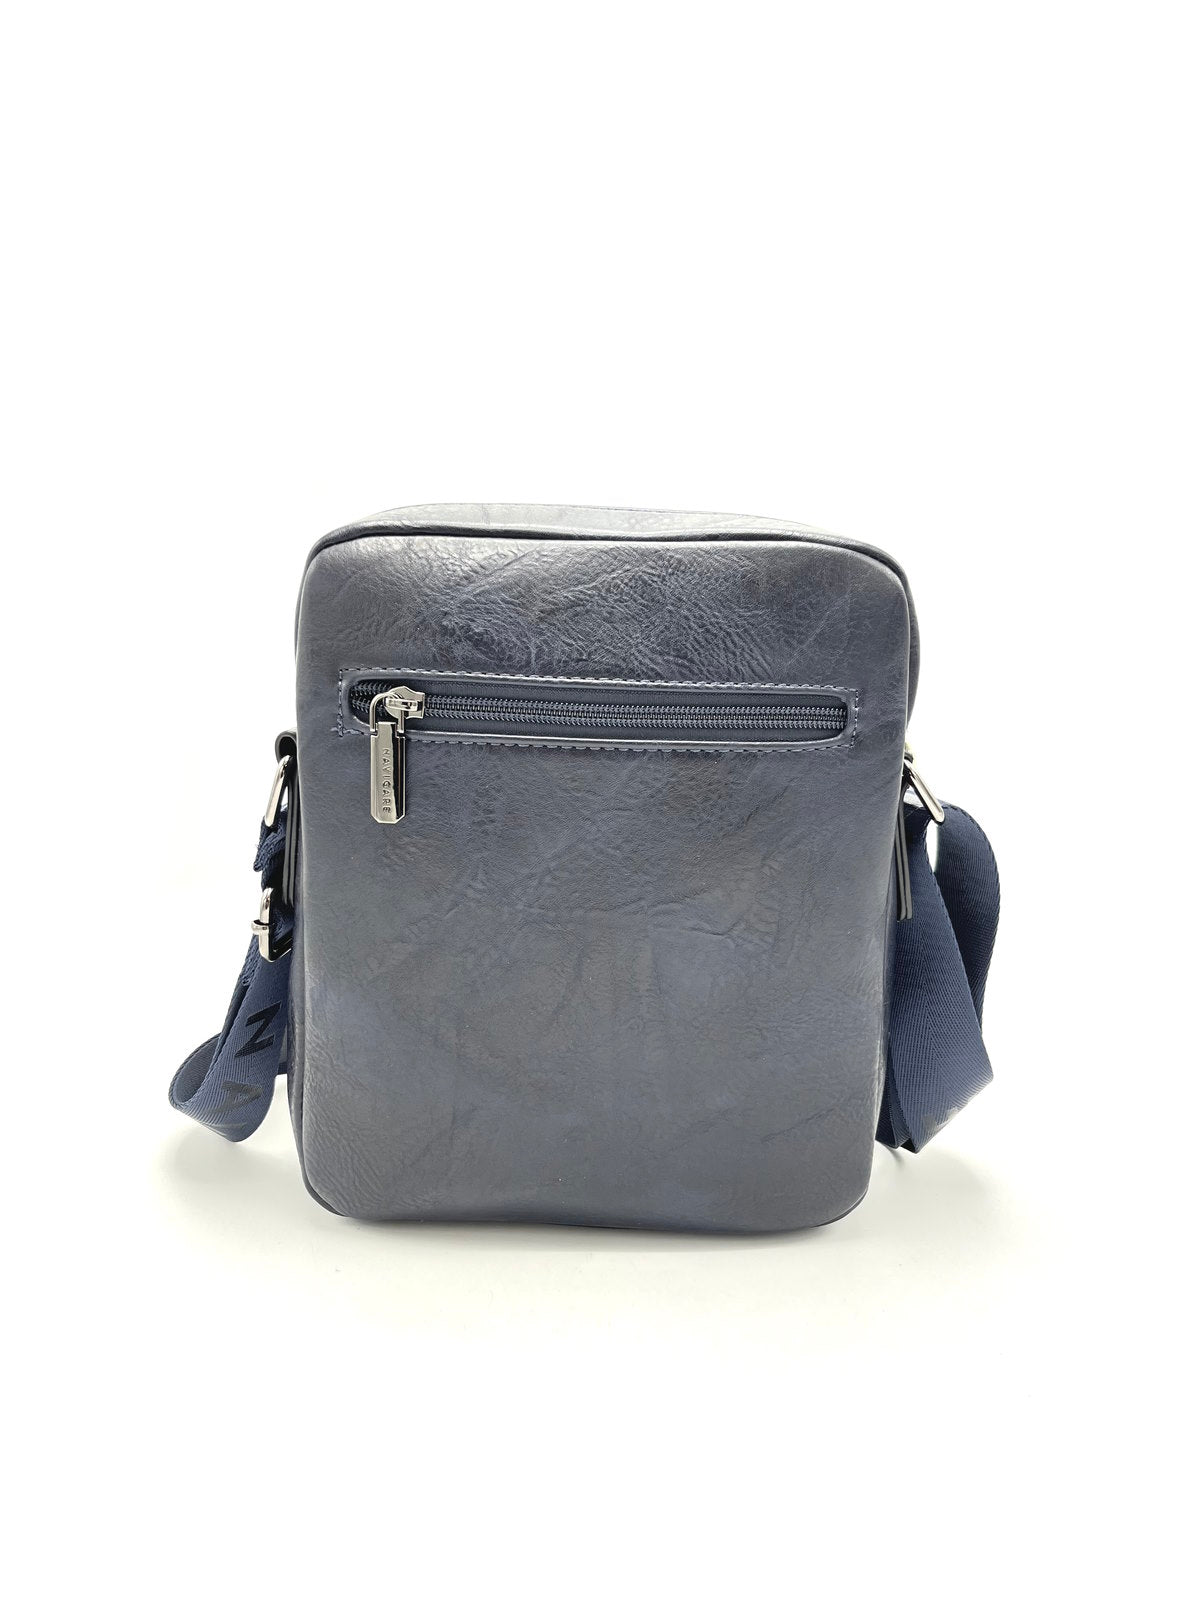 Brand NAVIGARE, Eco Leather Messenger Bag, art. BAG891-1.062